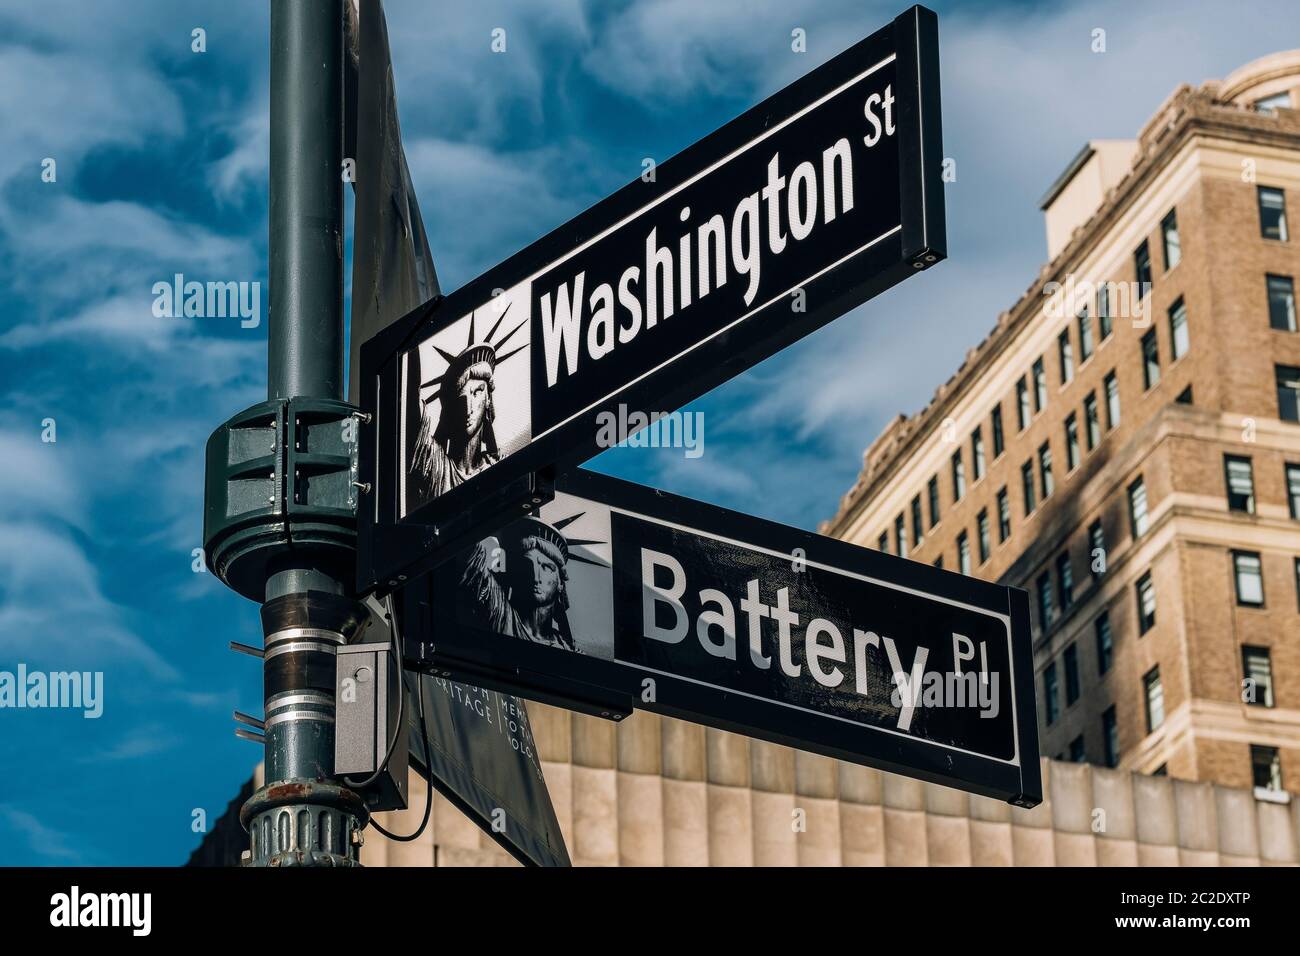 Vue rapprochée des panneaux indiquant Battery place et Washington Street et Maiden Lane dans le quartier financier Lower Manhattan New York CIT Banque D'Images